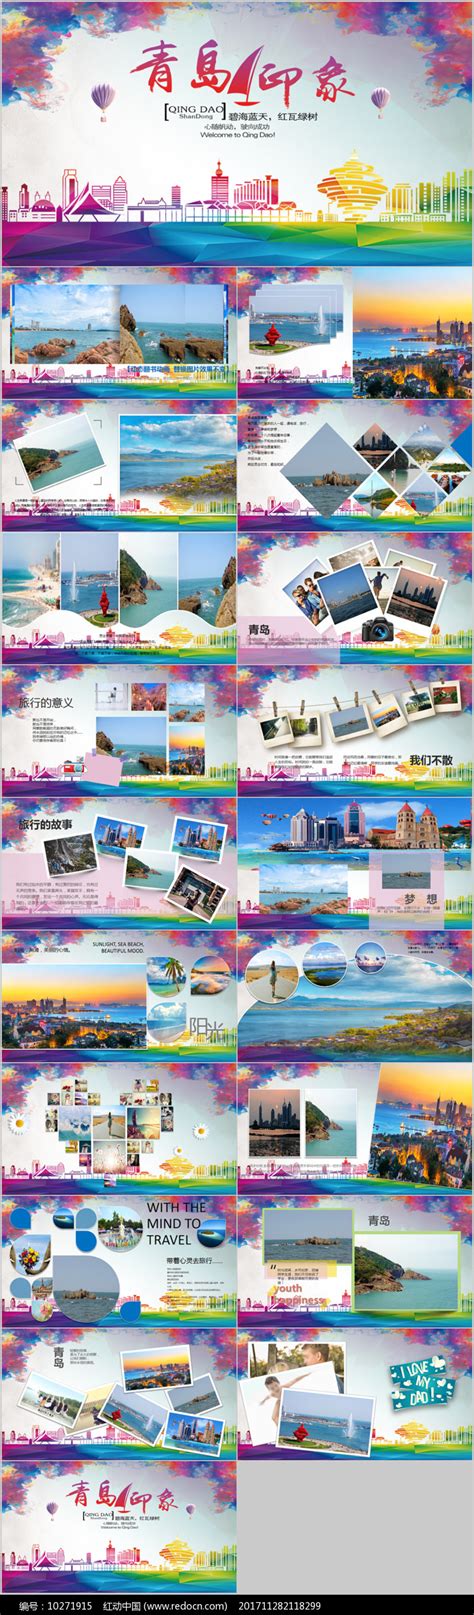 青岛旅游海报图片素材 - 青岛旅游海报高清图片大全免费下载 - 图星人